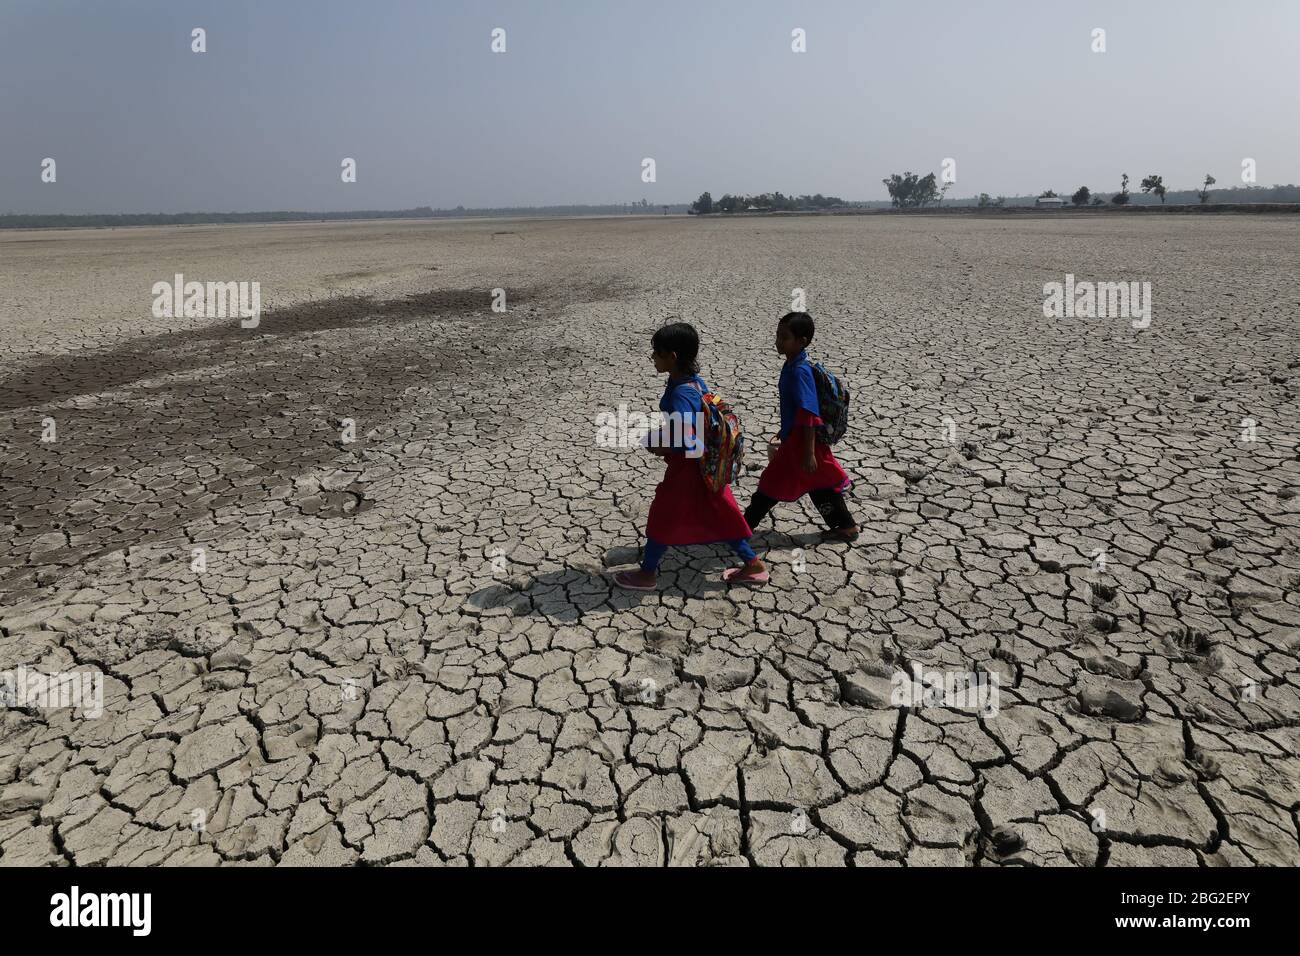 Khulna, Bangladesch: Schulmädchen gehen nach der besuchten Schule am Rande des Sundarbans Mangrovenwaldes, dem Welterbe, in Bangladesch nach Hause. Das Leben der Menschen wird durch die Auswirkungen des Klimawandels jeden Tag schlechter. Die meisten Menschen sind für ihren Lebensunterhalt auf den Wald angewiesen. Die Wasserkrise ist eines der größten Probleme in ihrem Leben, da salzhales Wasser über die Küste in Bangladesch geht. Die meisten Menschen haben an die Flüsse gefischt, einige von ihnen sammeln Honig und Holz aus dem Mangrovenwald. In der Trockenzeit leiden die Menschen unter reinem Trinkwasser. Stockfoto